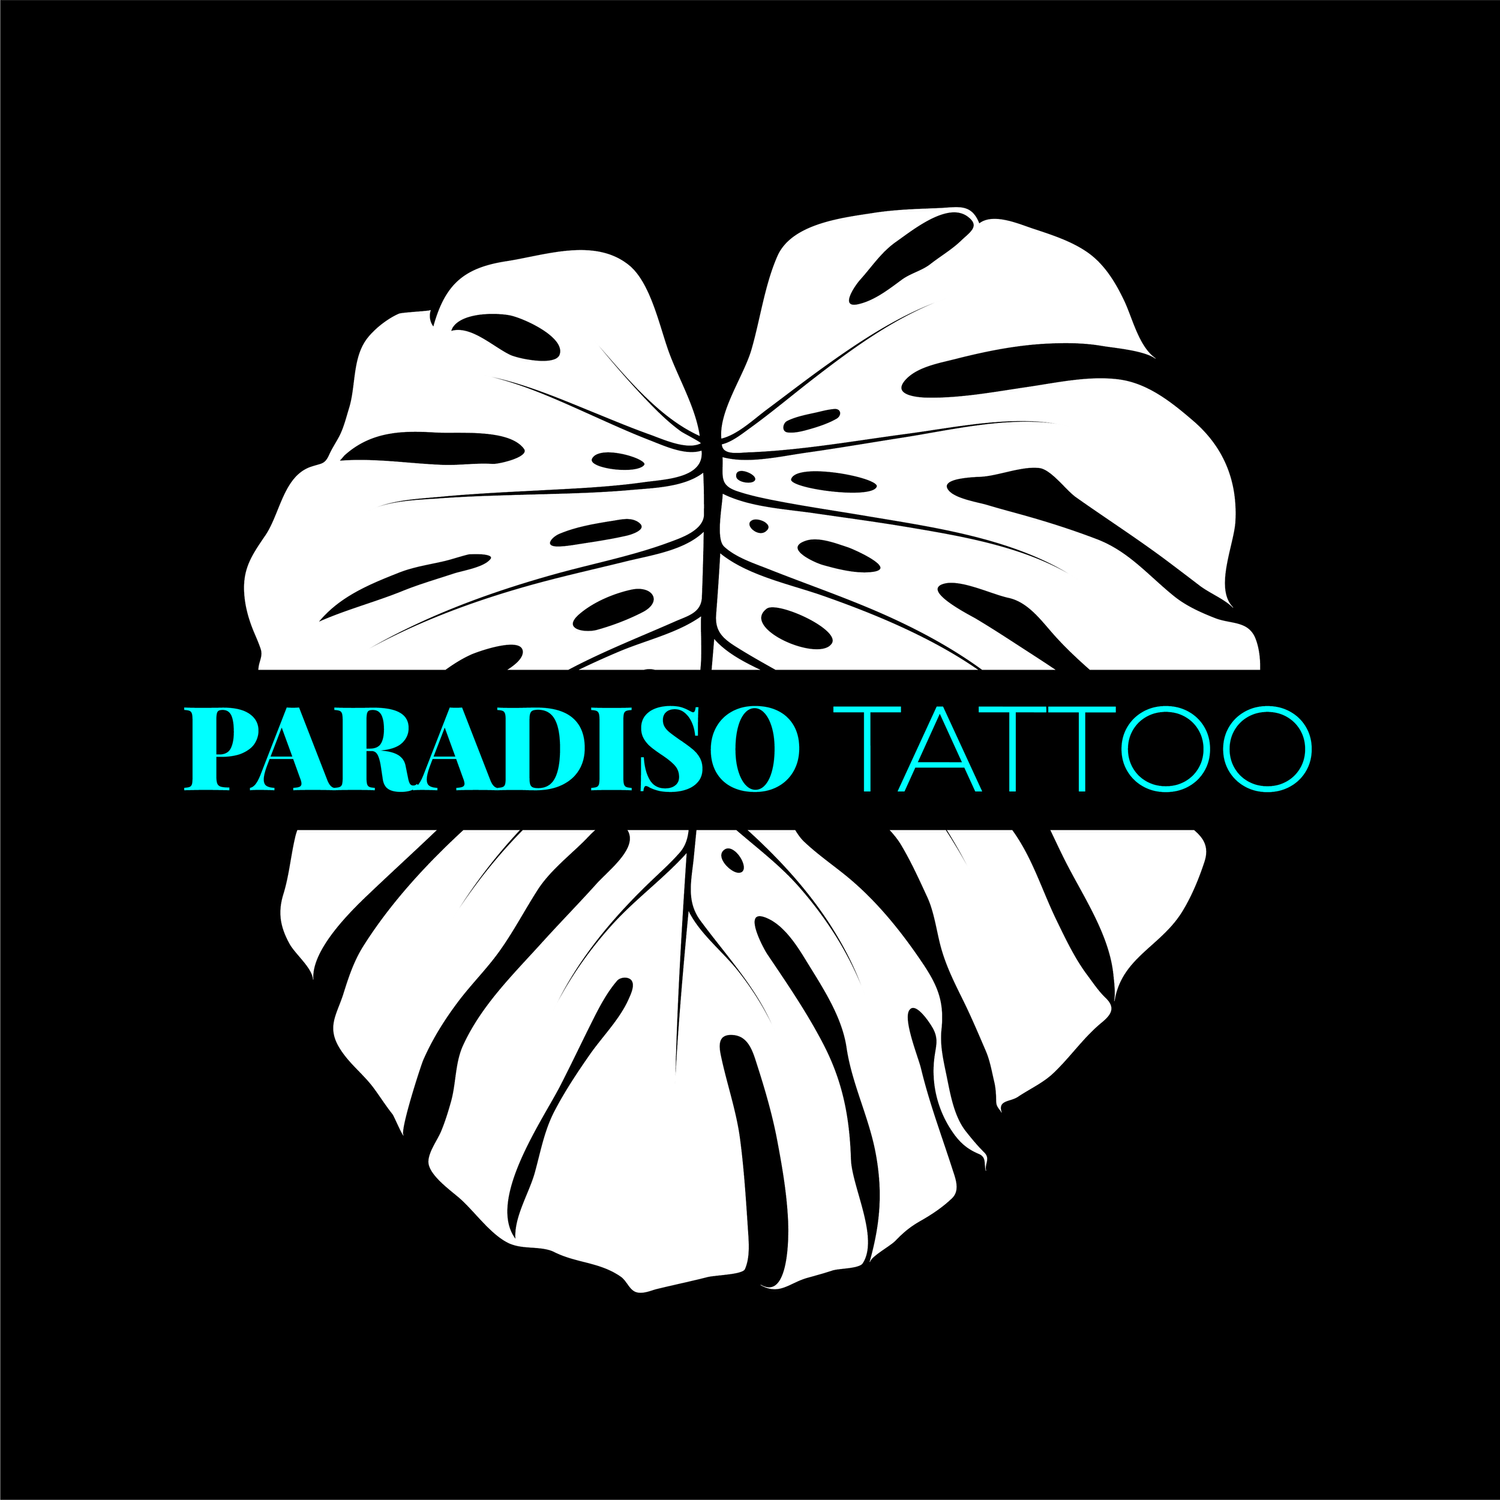 Paradiso Tattoo